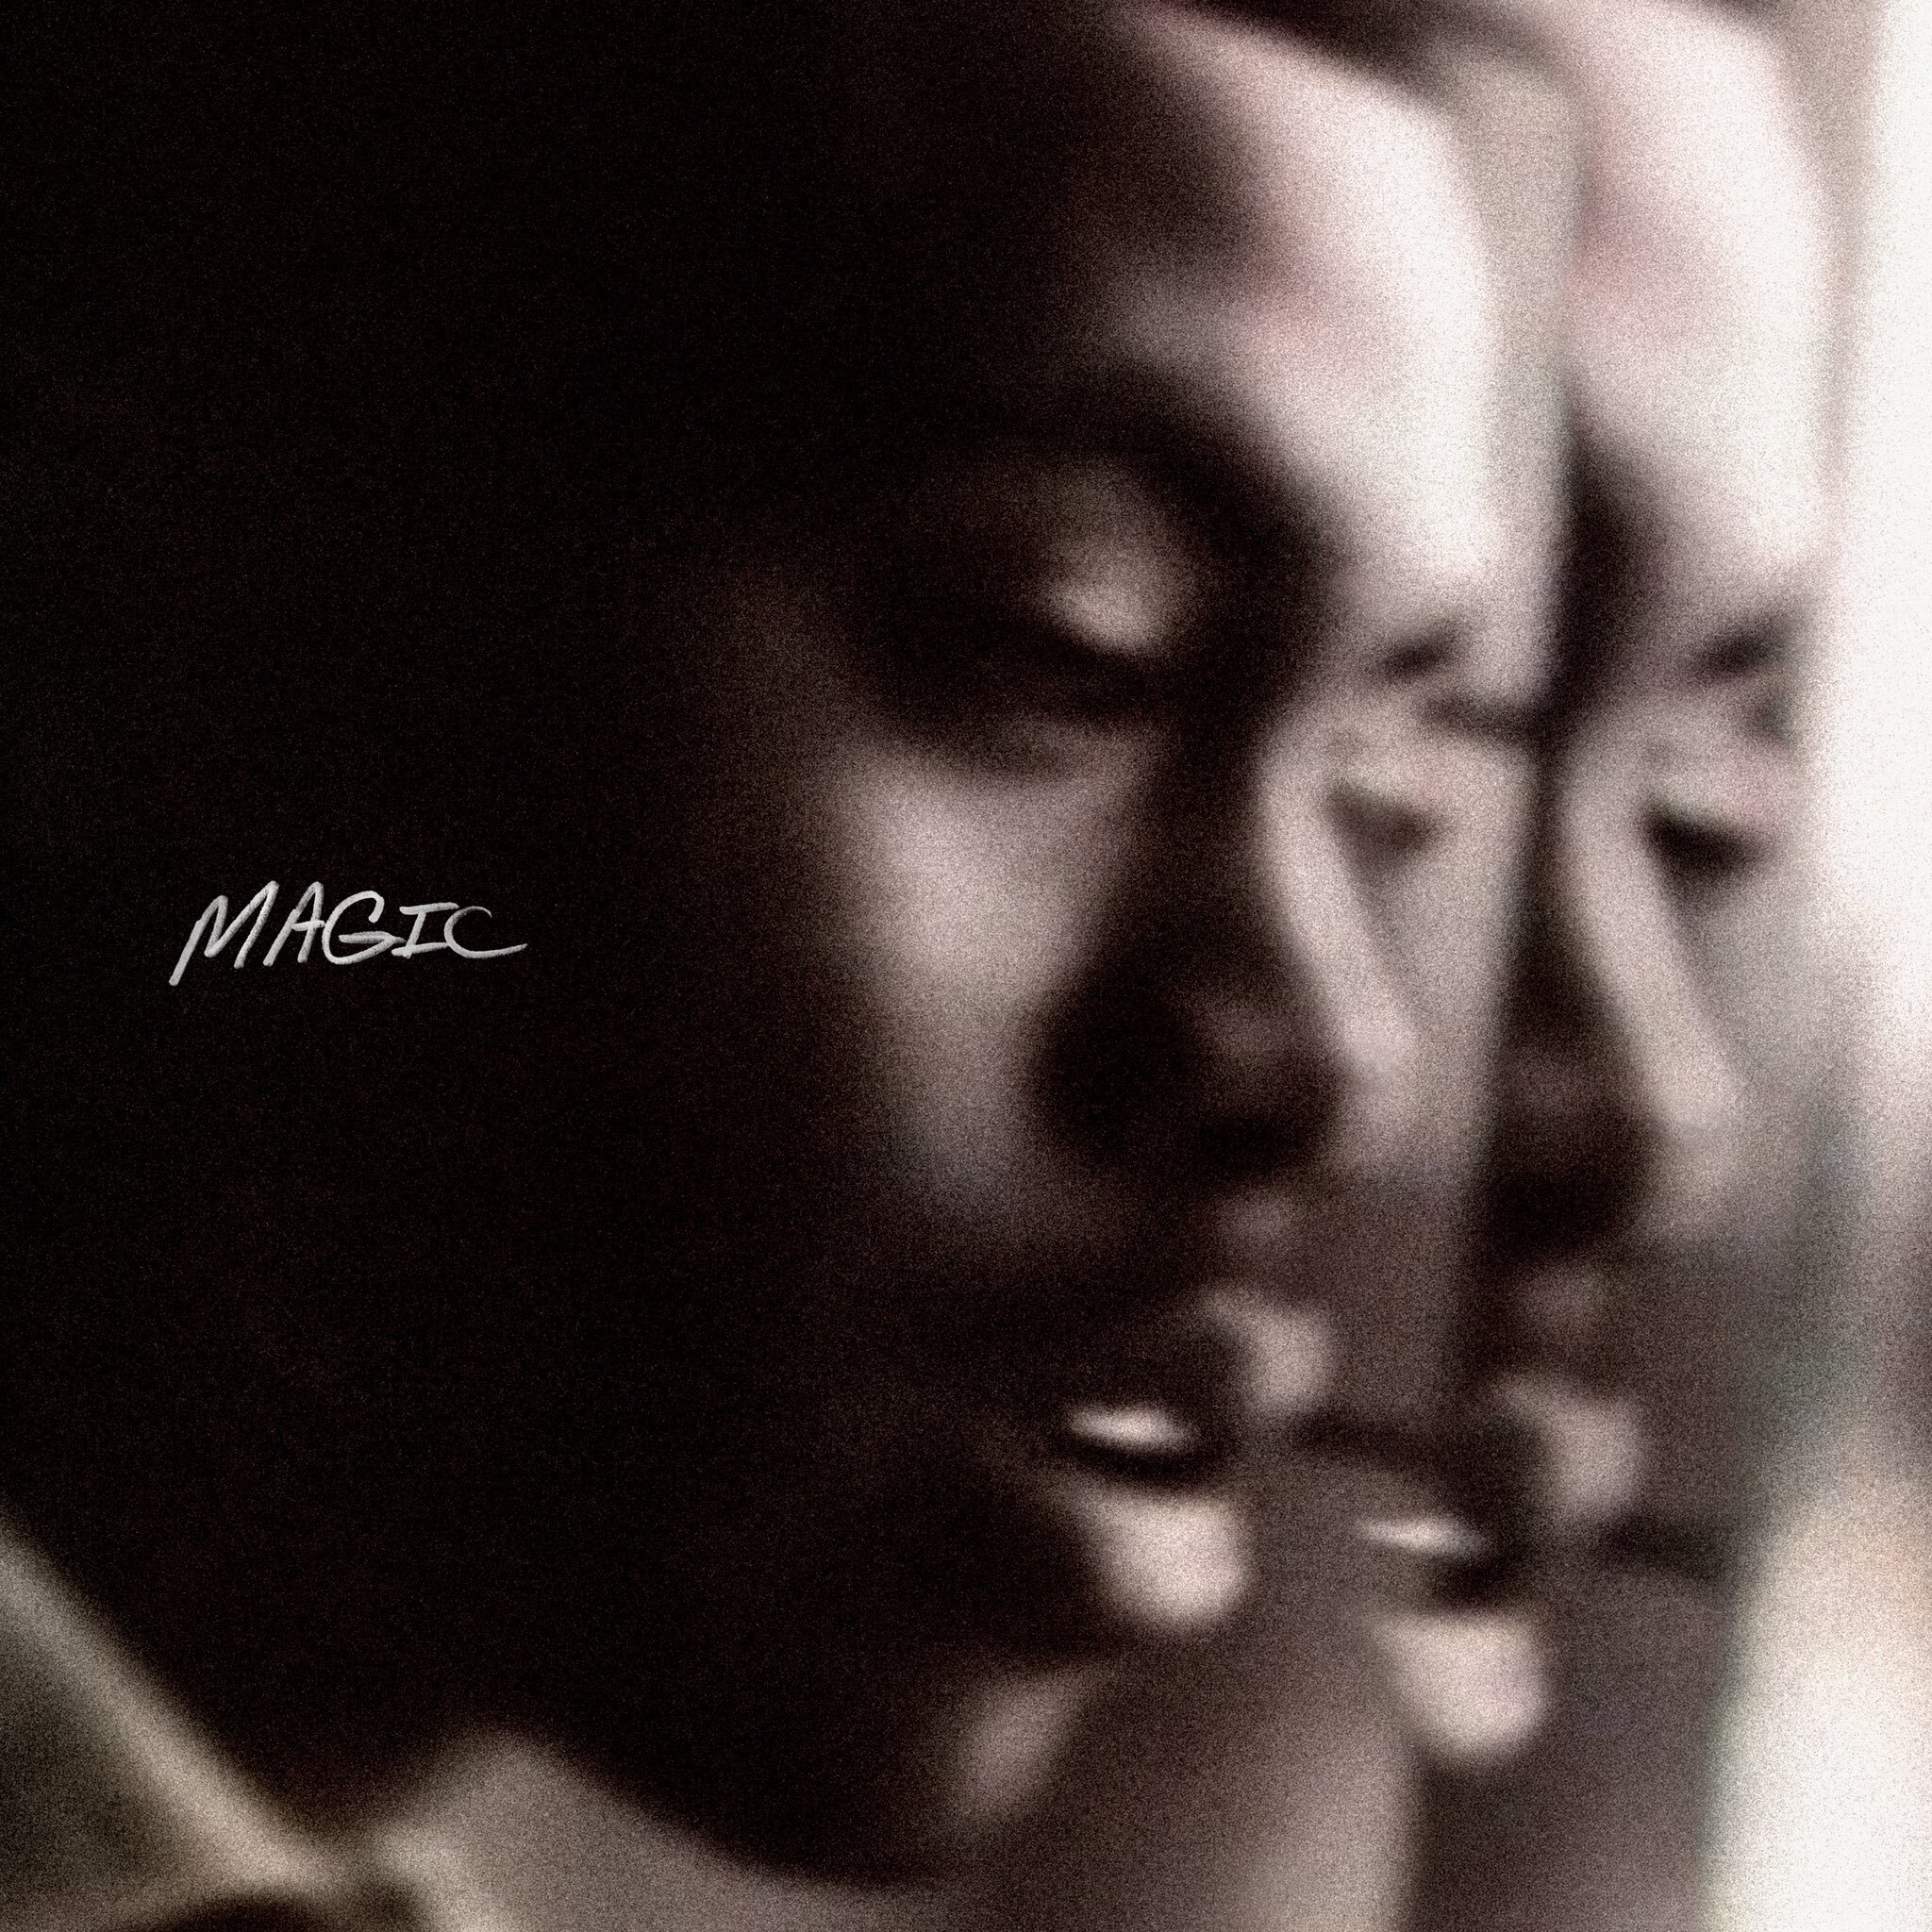 Stream Nas & Hit-Boy’s ‘MAGIC’ Album